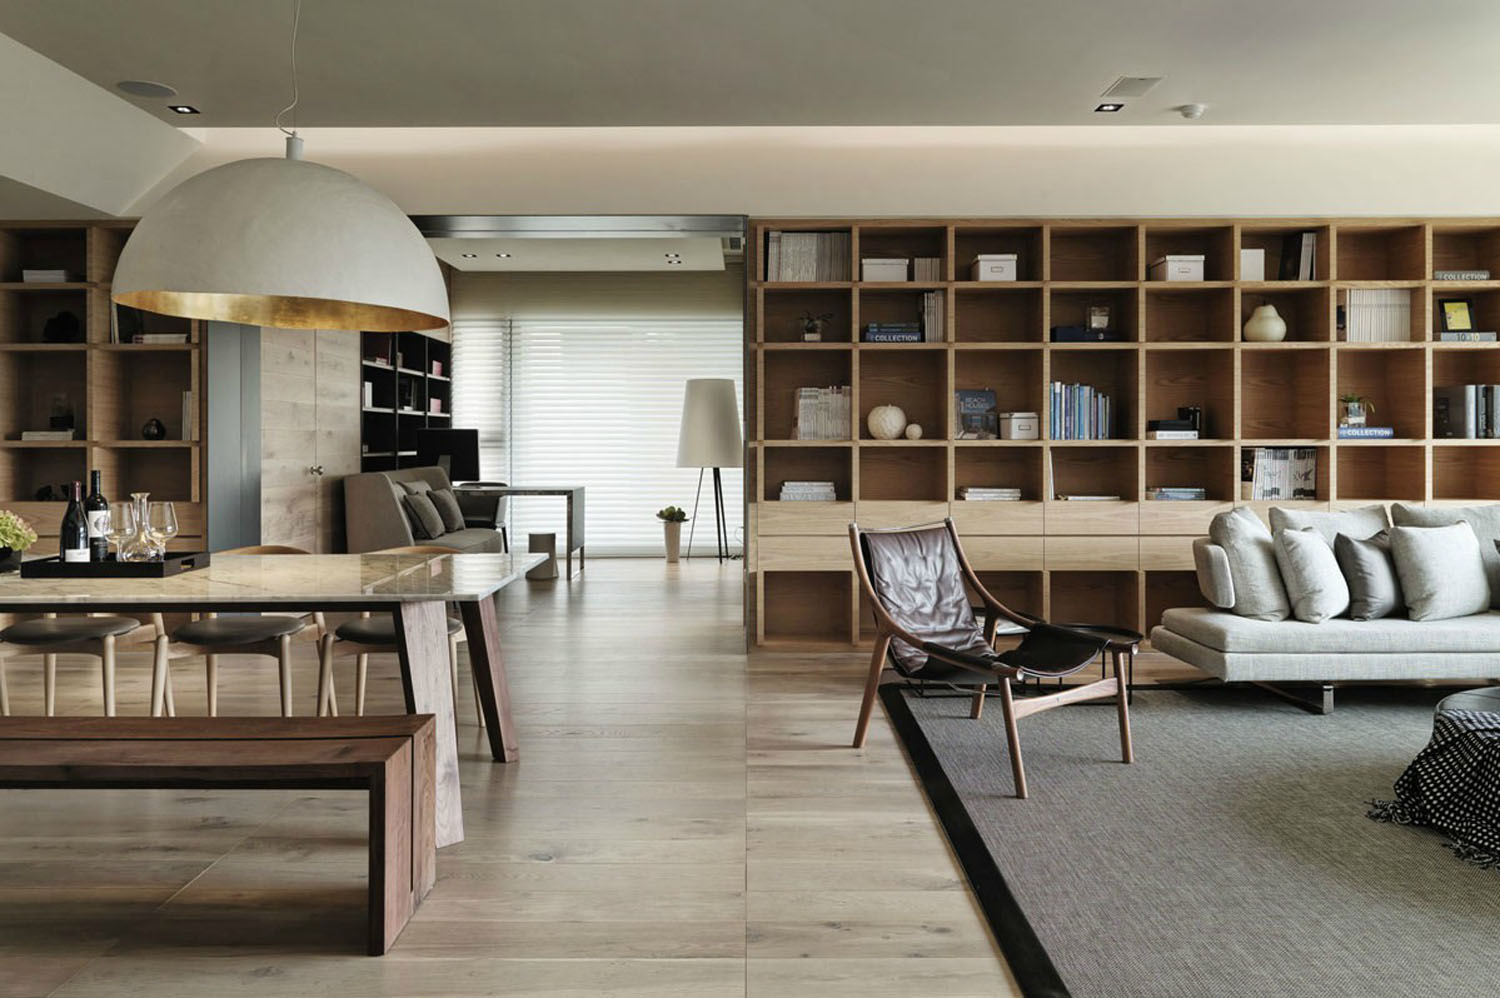 日式设计风格直接受日本和式建筑影响，讲究空间的流动与分隔，流动则为一室，分隔则分几个功能空间，空间中总能让人静静地思考。